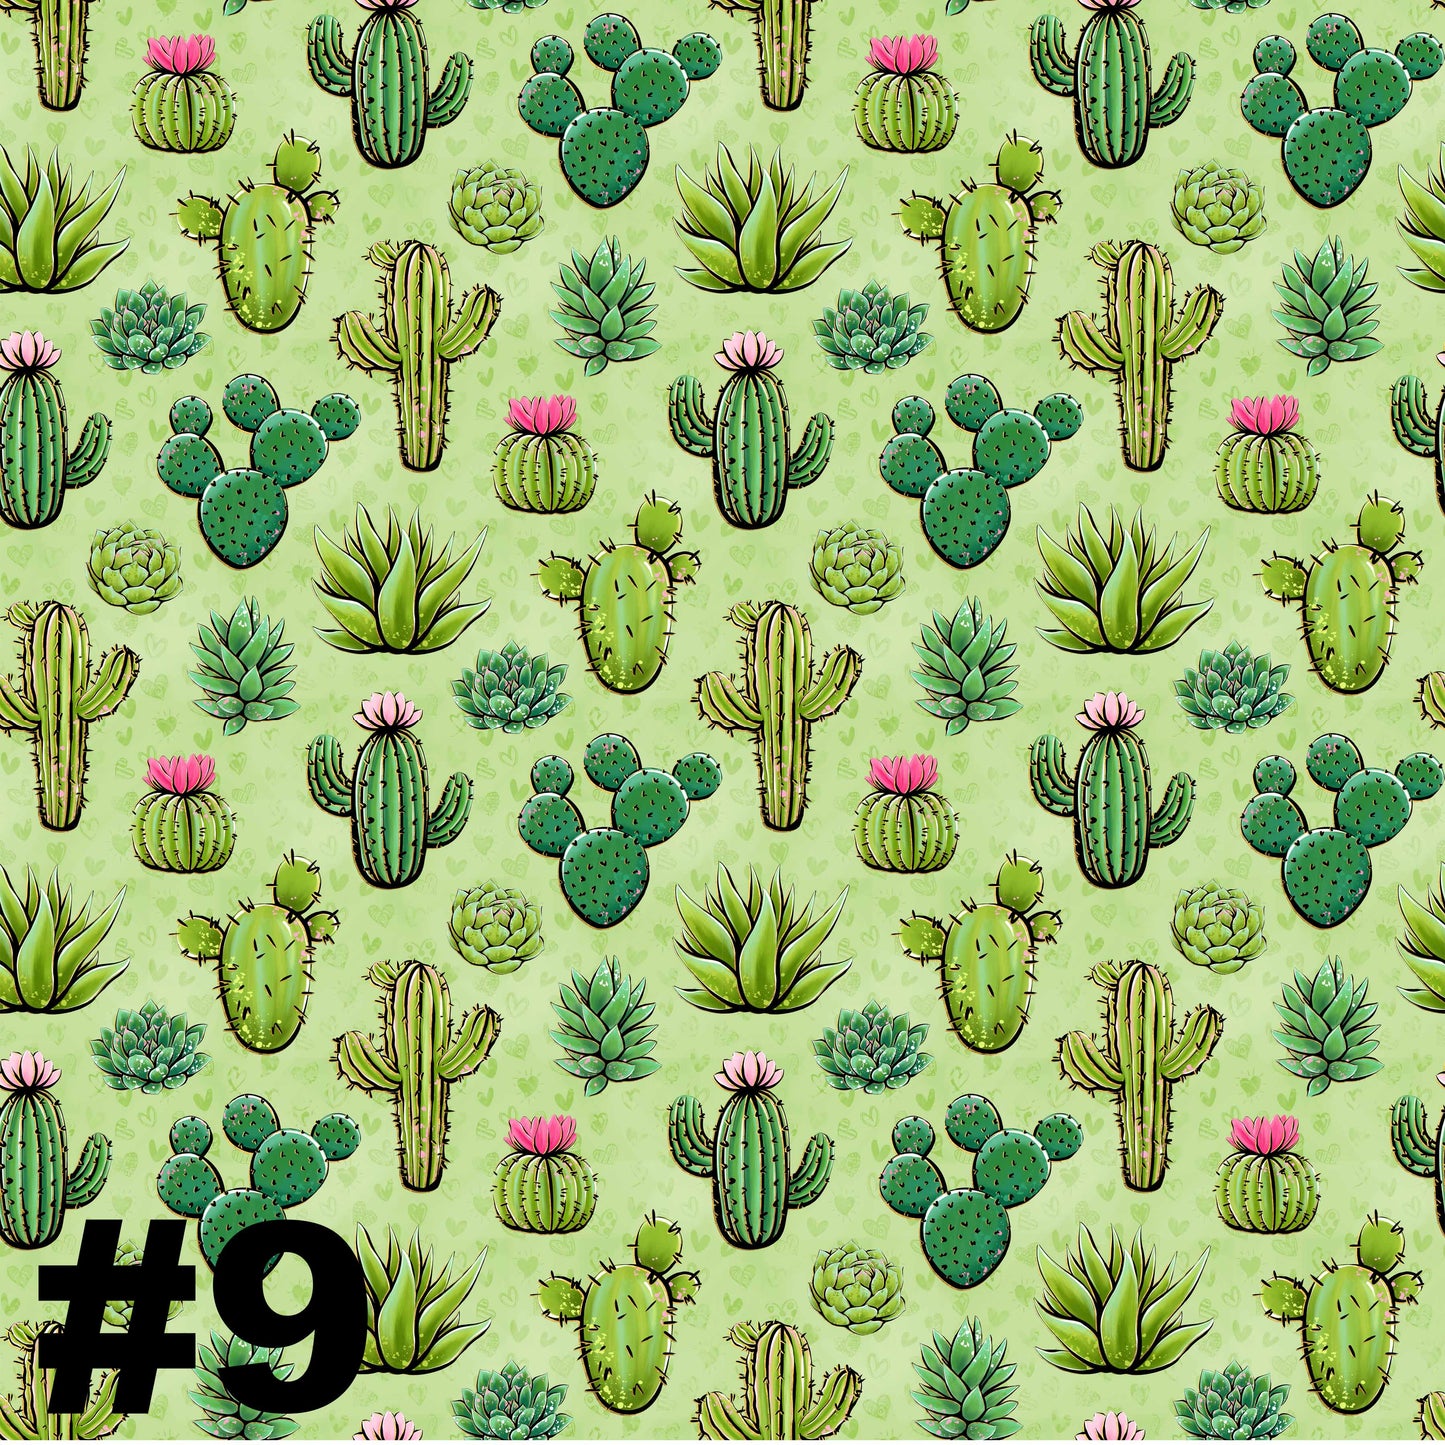 Green & Pink Cactus Patterns